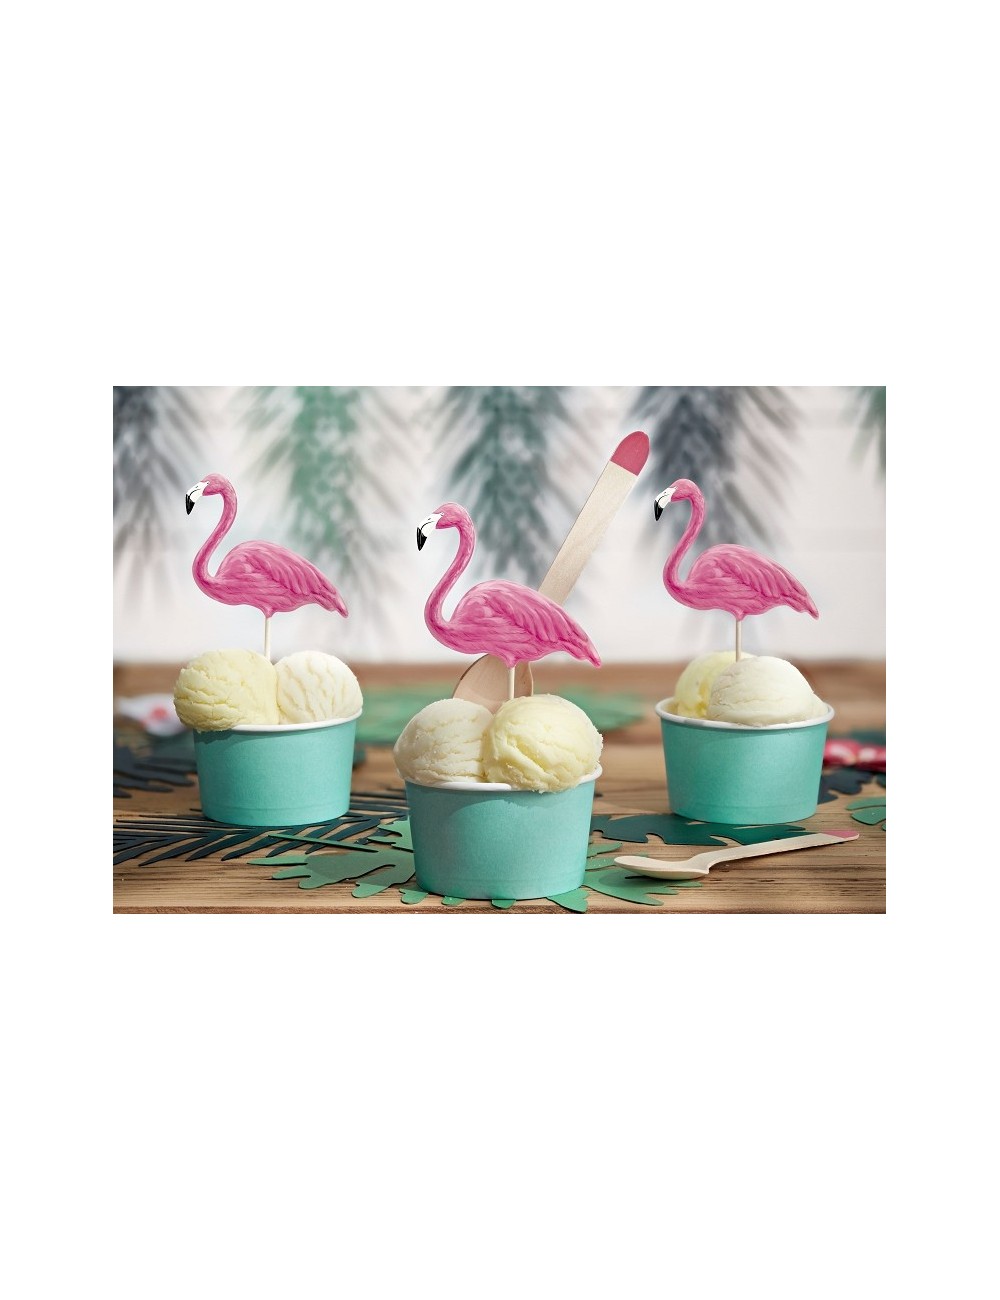 Piques décoratifs "Aloha - Flamingo"